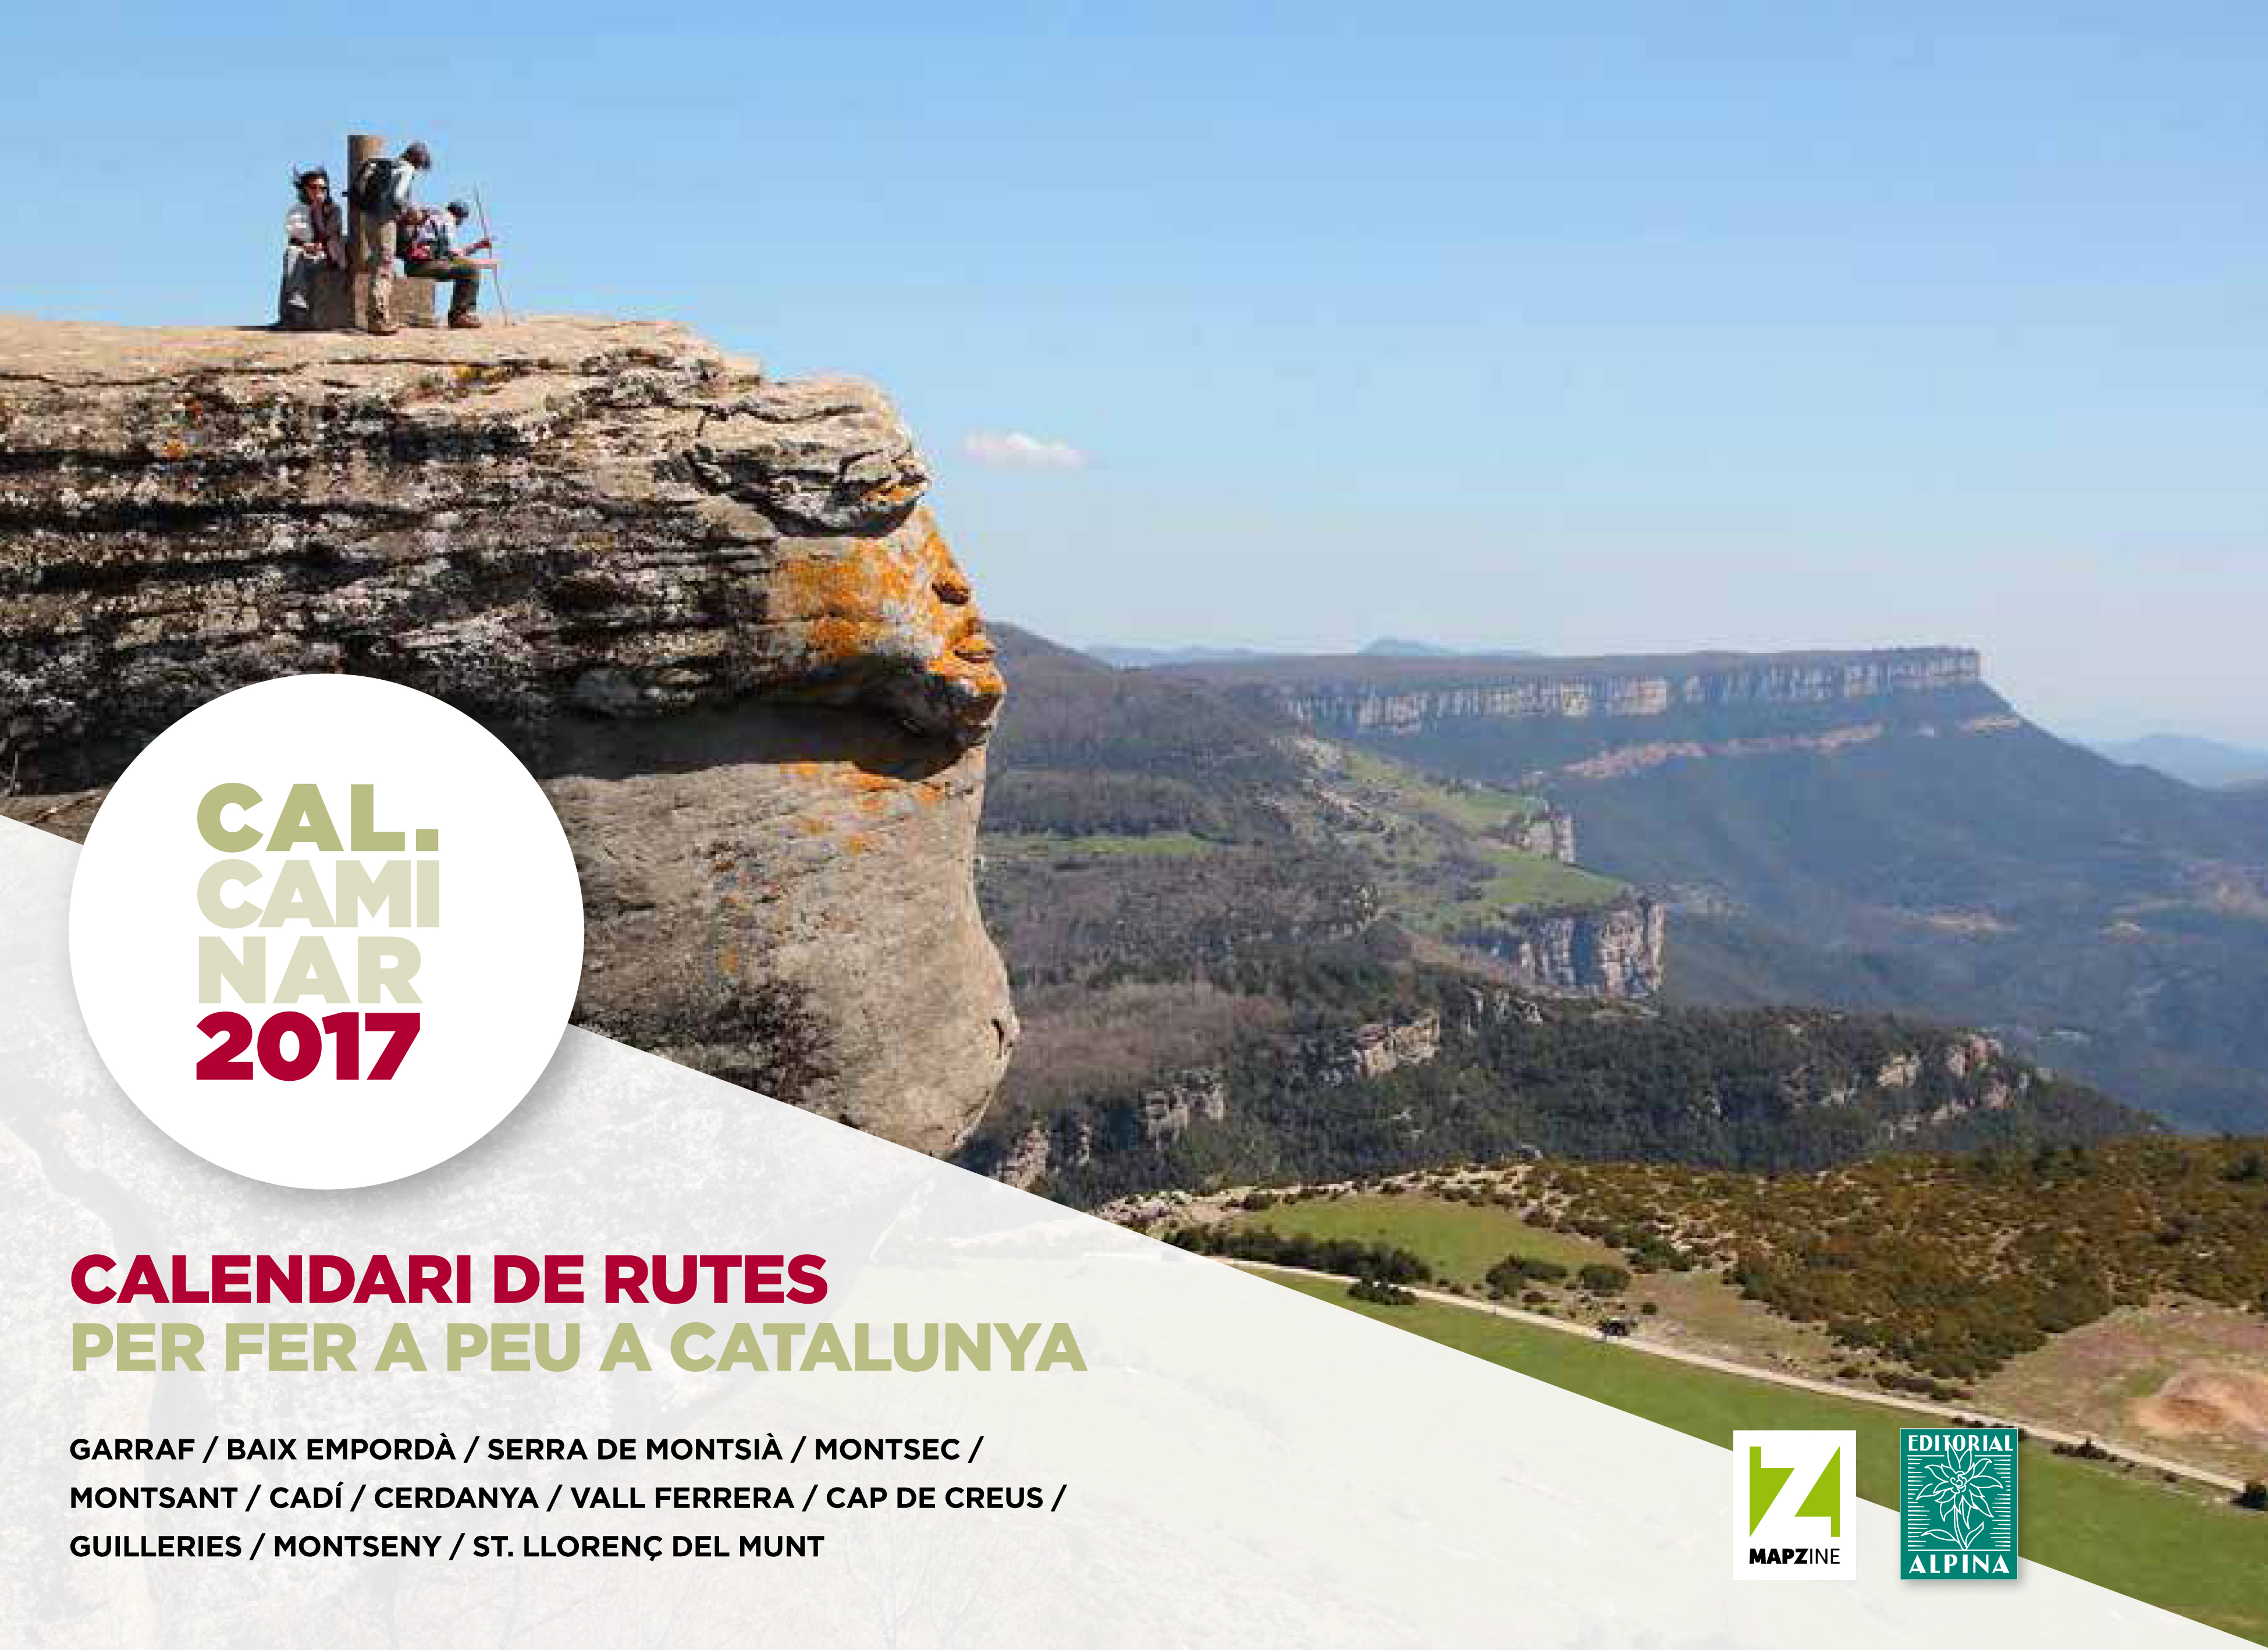 2017 CAL CAMINAR CALENDARI DE RUTES -ALPINA